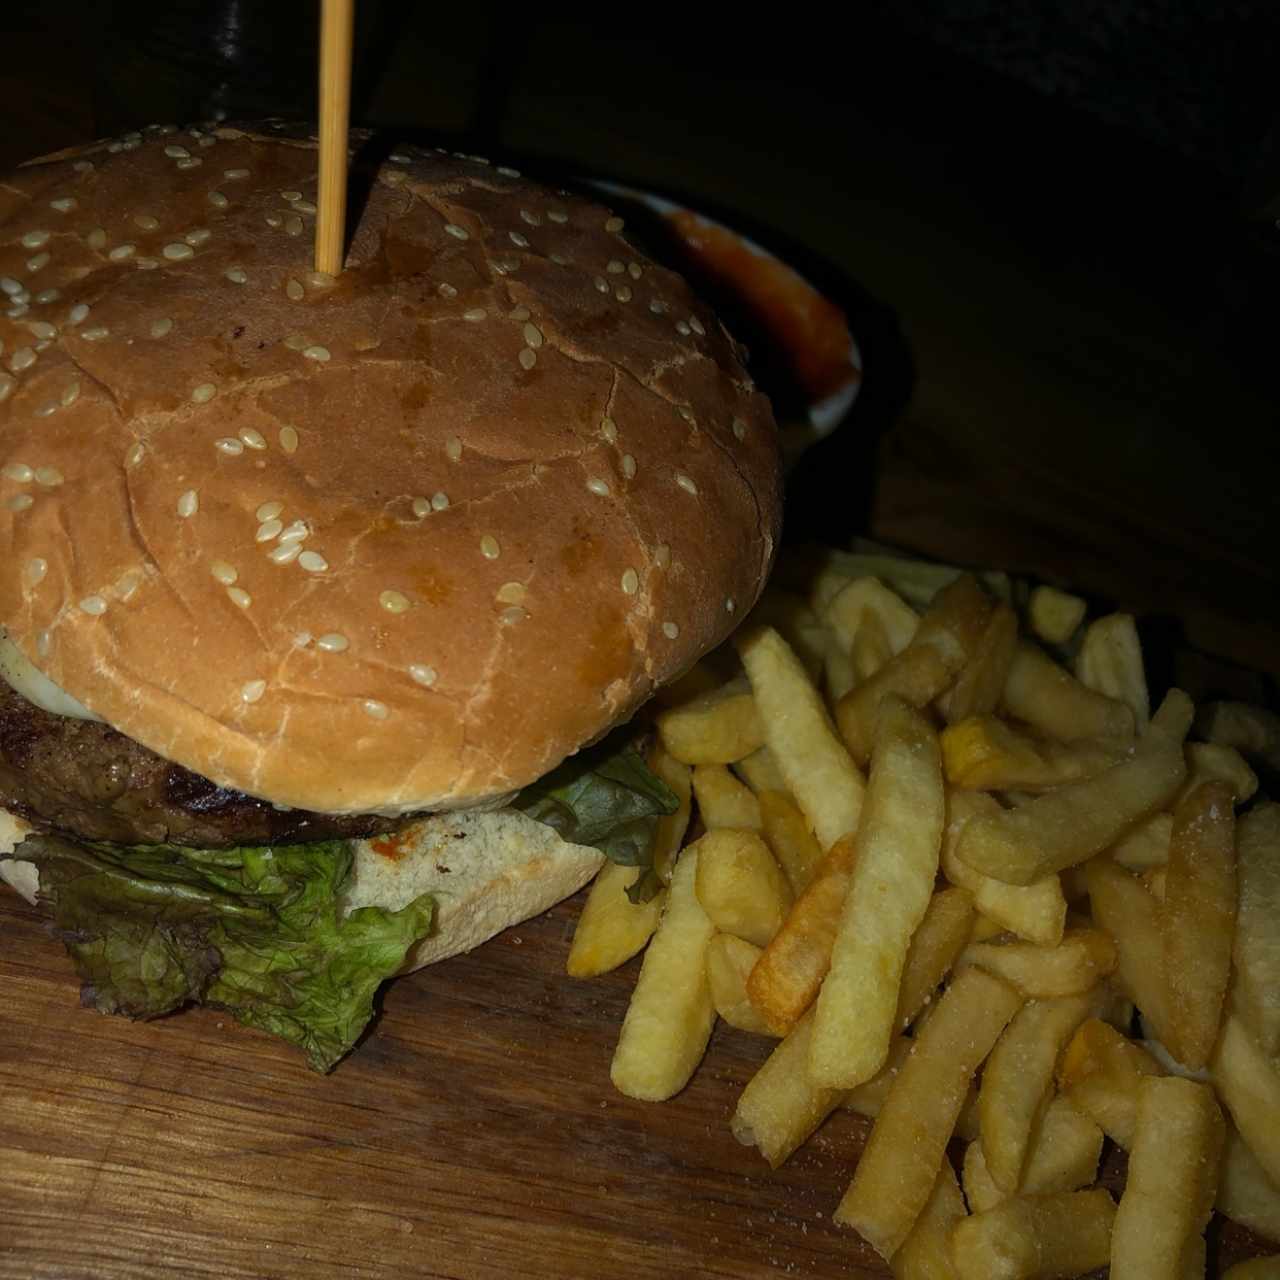 Principales - Panorama Burger